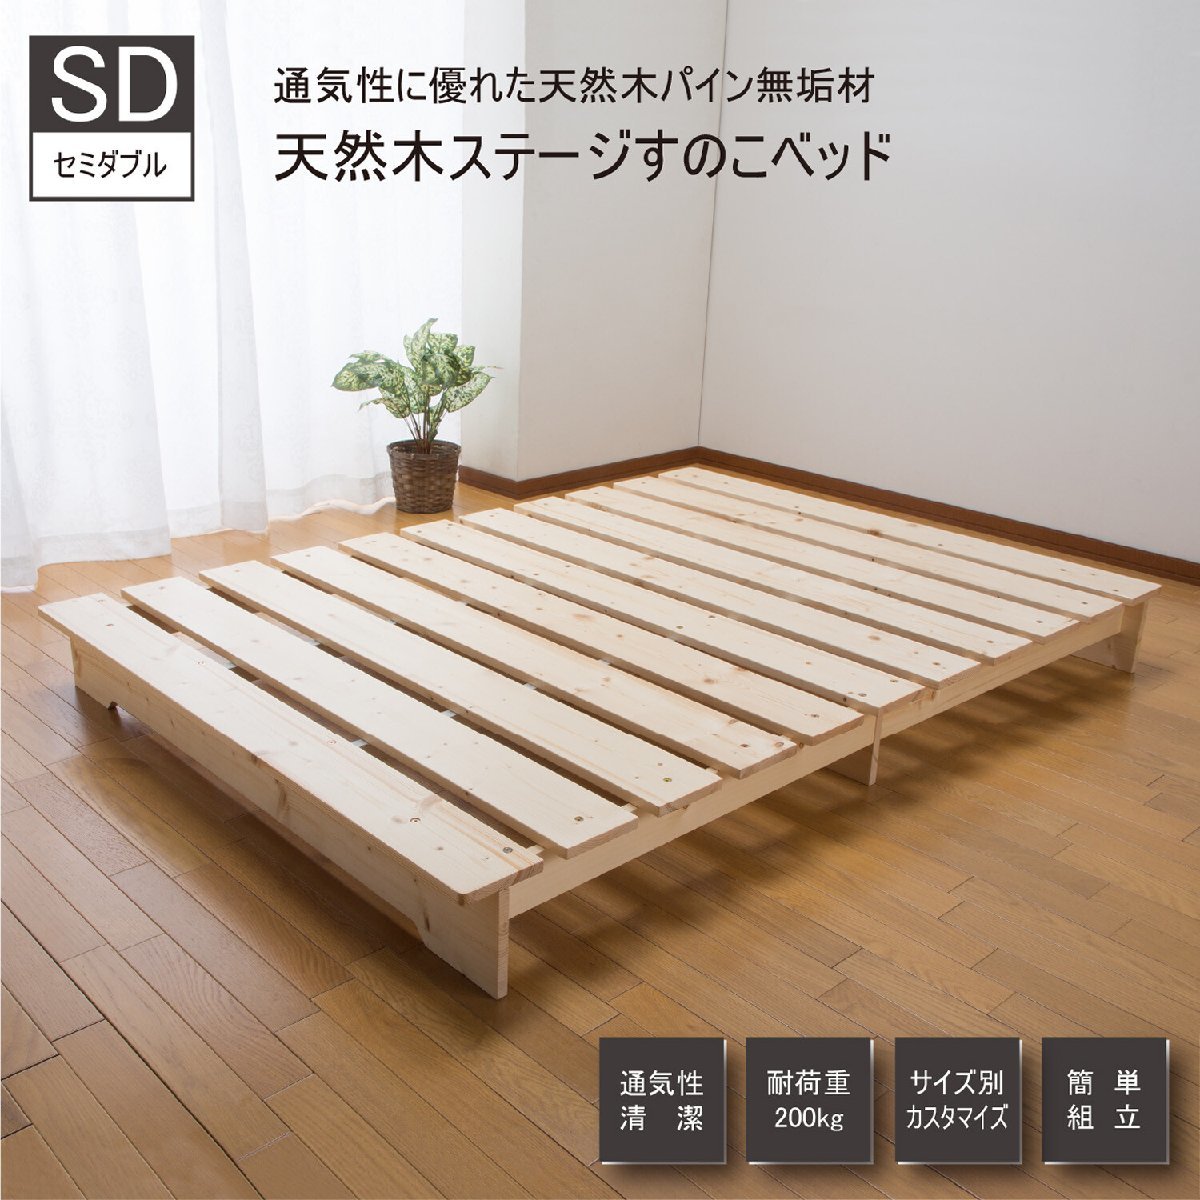 天然木ステージベッド セミダブル ZLF-101(すのこベッド カビ対策 湿気対策 除湿 天然木 防湿)